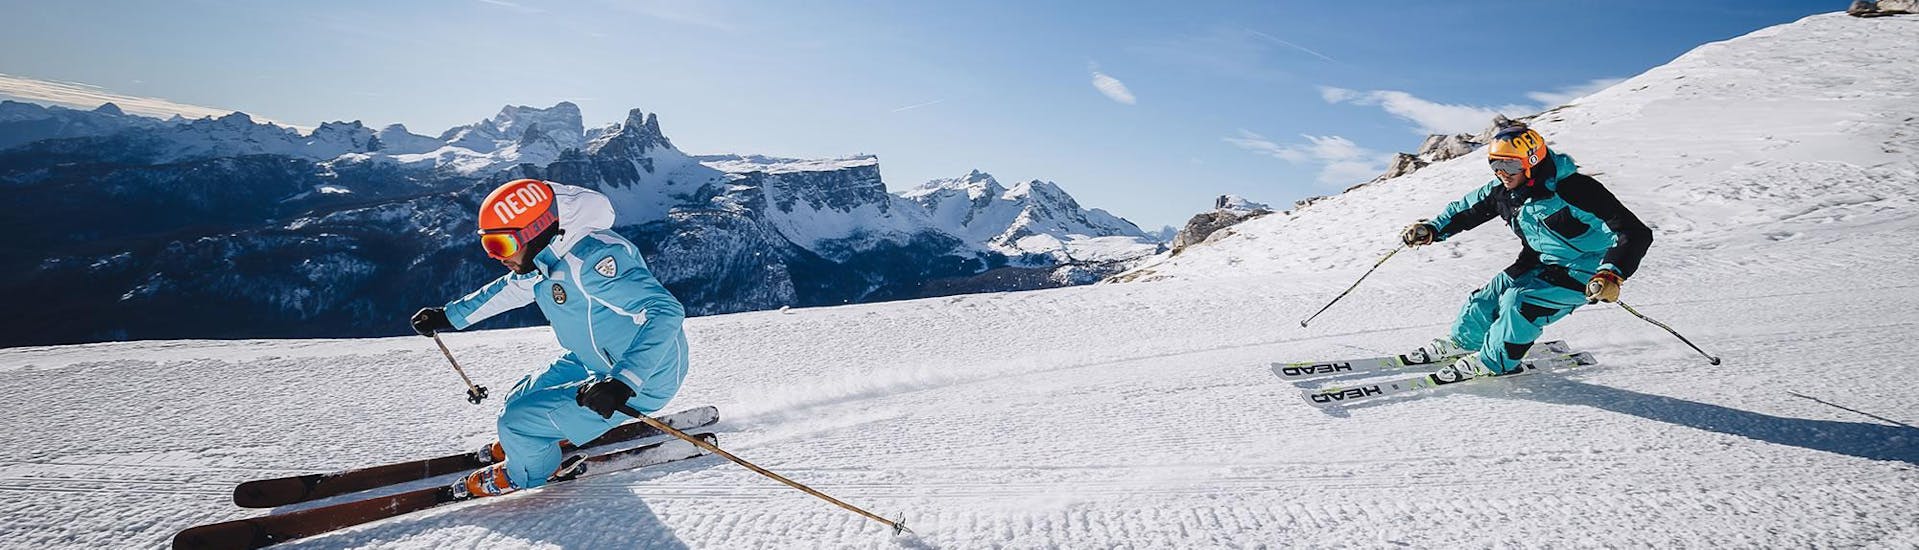 Un instructor de esquí conduce por una pista en la estación de esquí de Cortina d'Ampezzo, durante una de las clases particulares de esquí para adultos - VIP, organizadas por la escuela de esquí Scuola di Sci e Snowboard Cristallo Cortina.